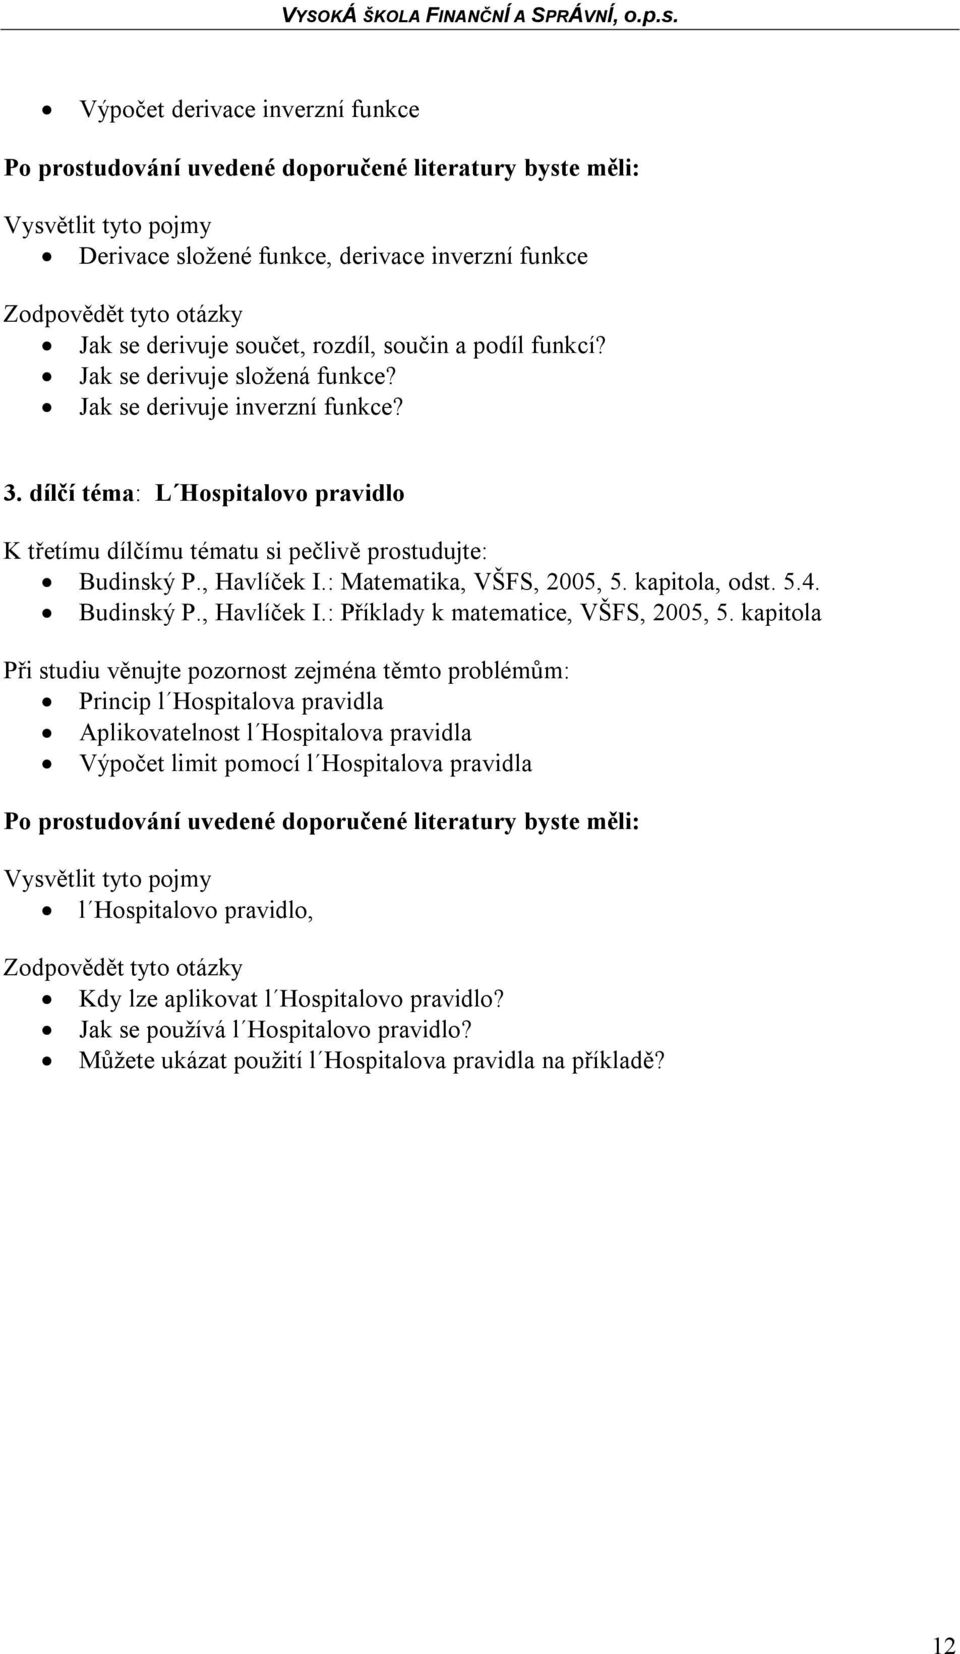 kapitola, odst. 5.4. Budinský P., Havlíček I.: Příklady k matematice, VŠFS, 2005, 5.